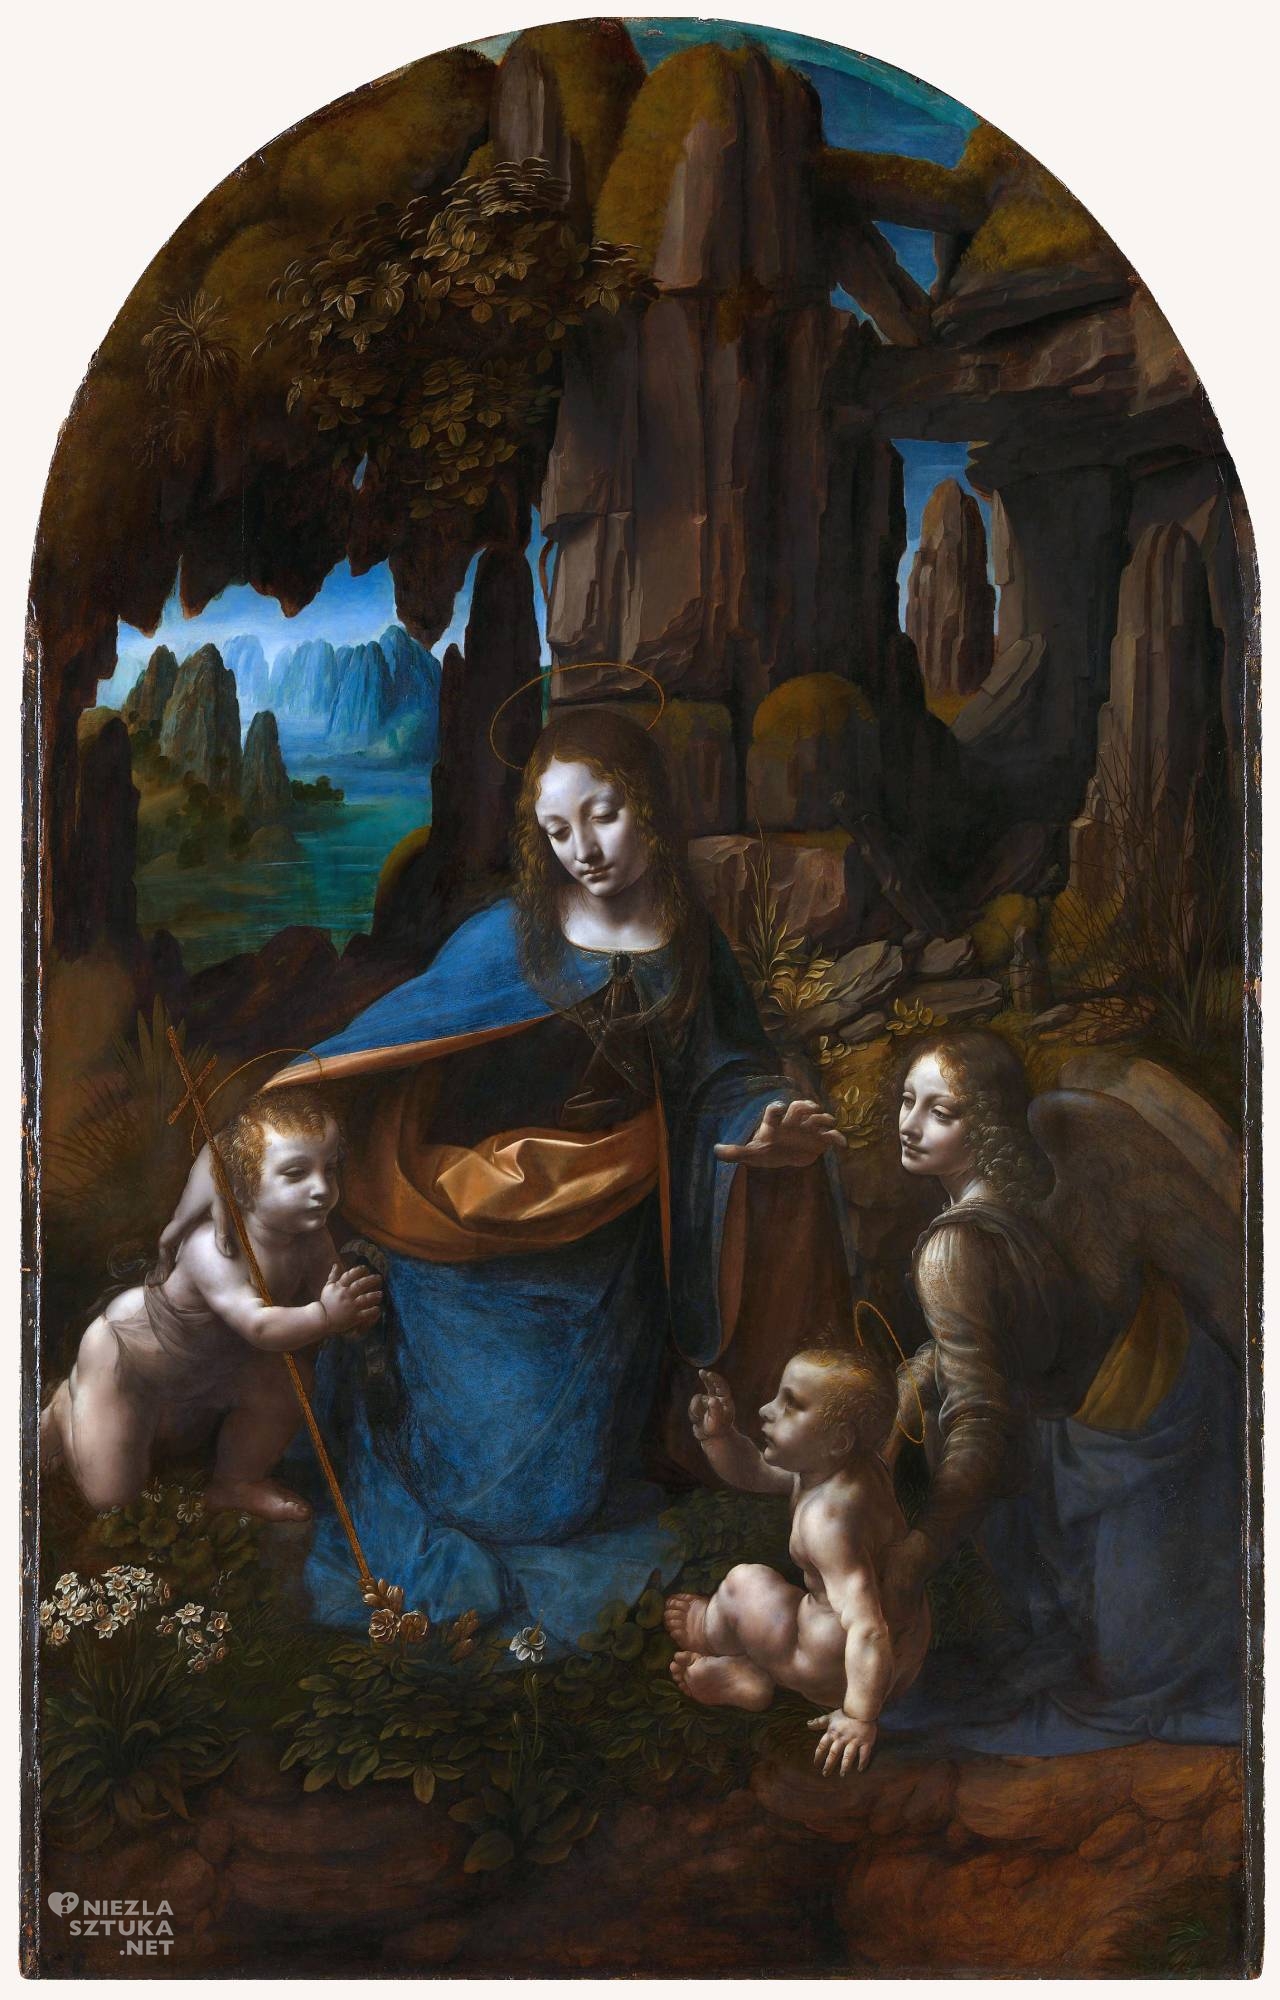 Leonardo da Vinci, Madonna wśród skał, Madonna w grocie, sztuka włoska, malarstwo włoskie, Niezła sztuka